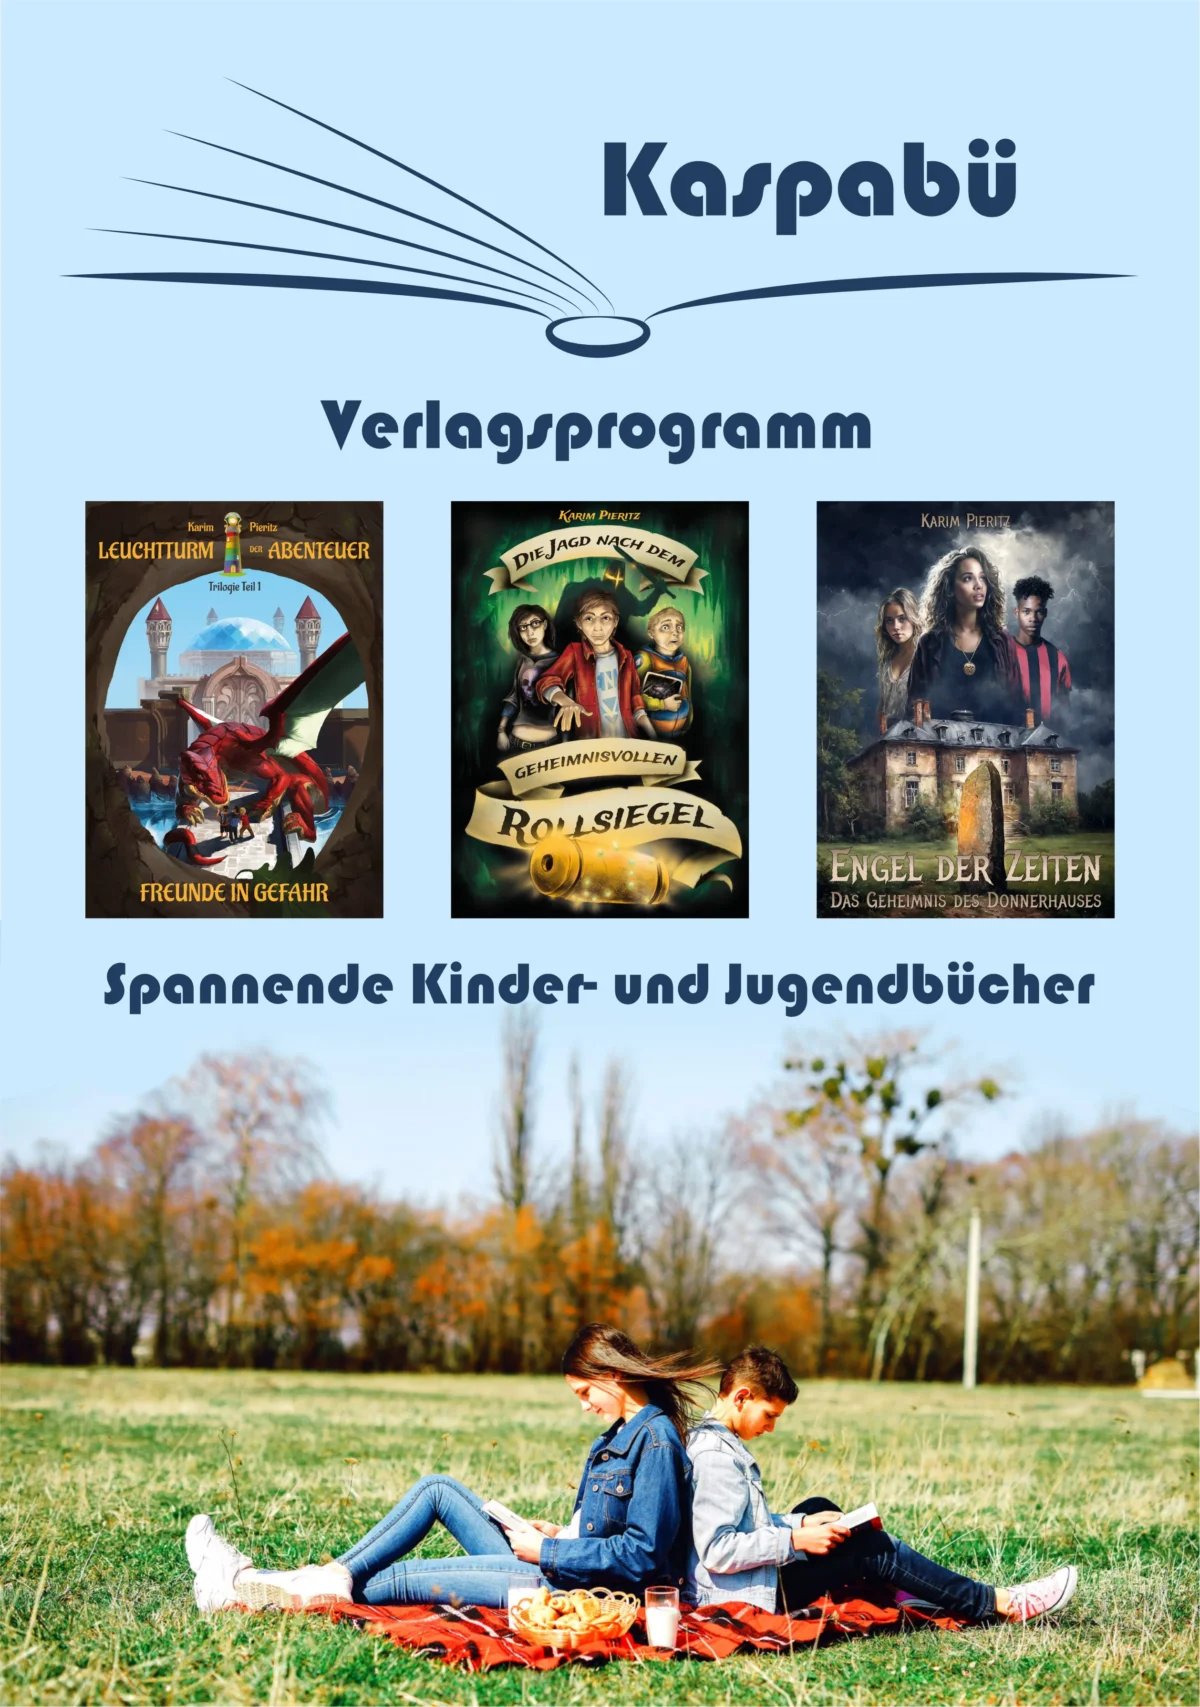 Kaspabü Verlagsprogramm